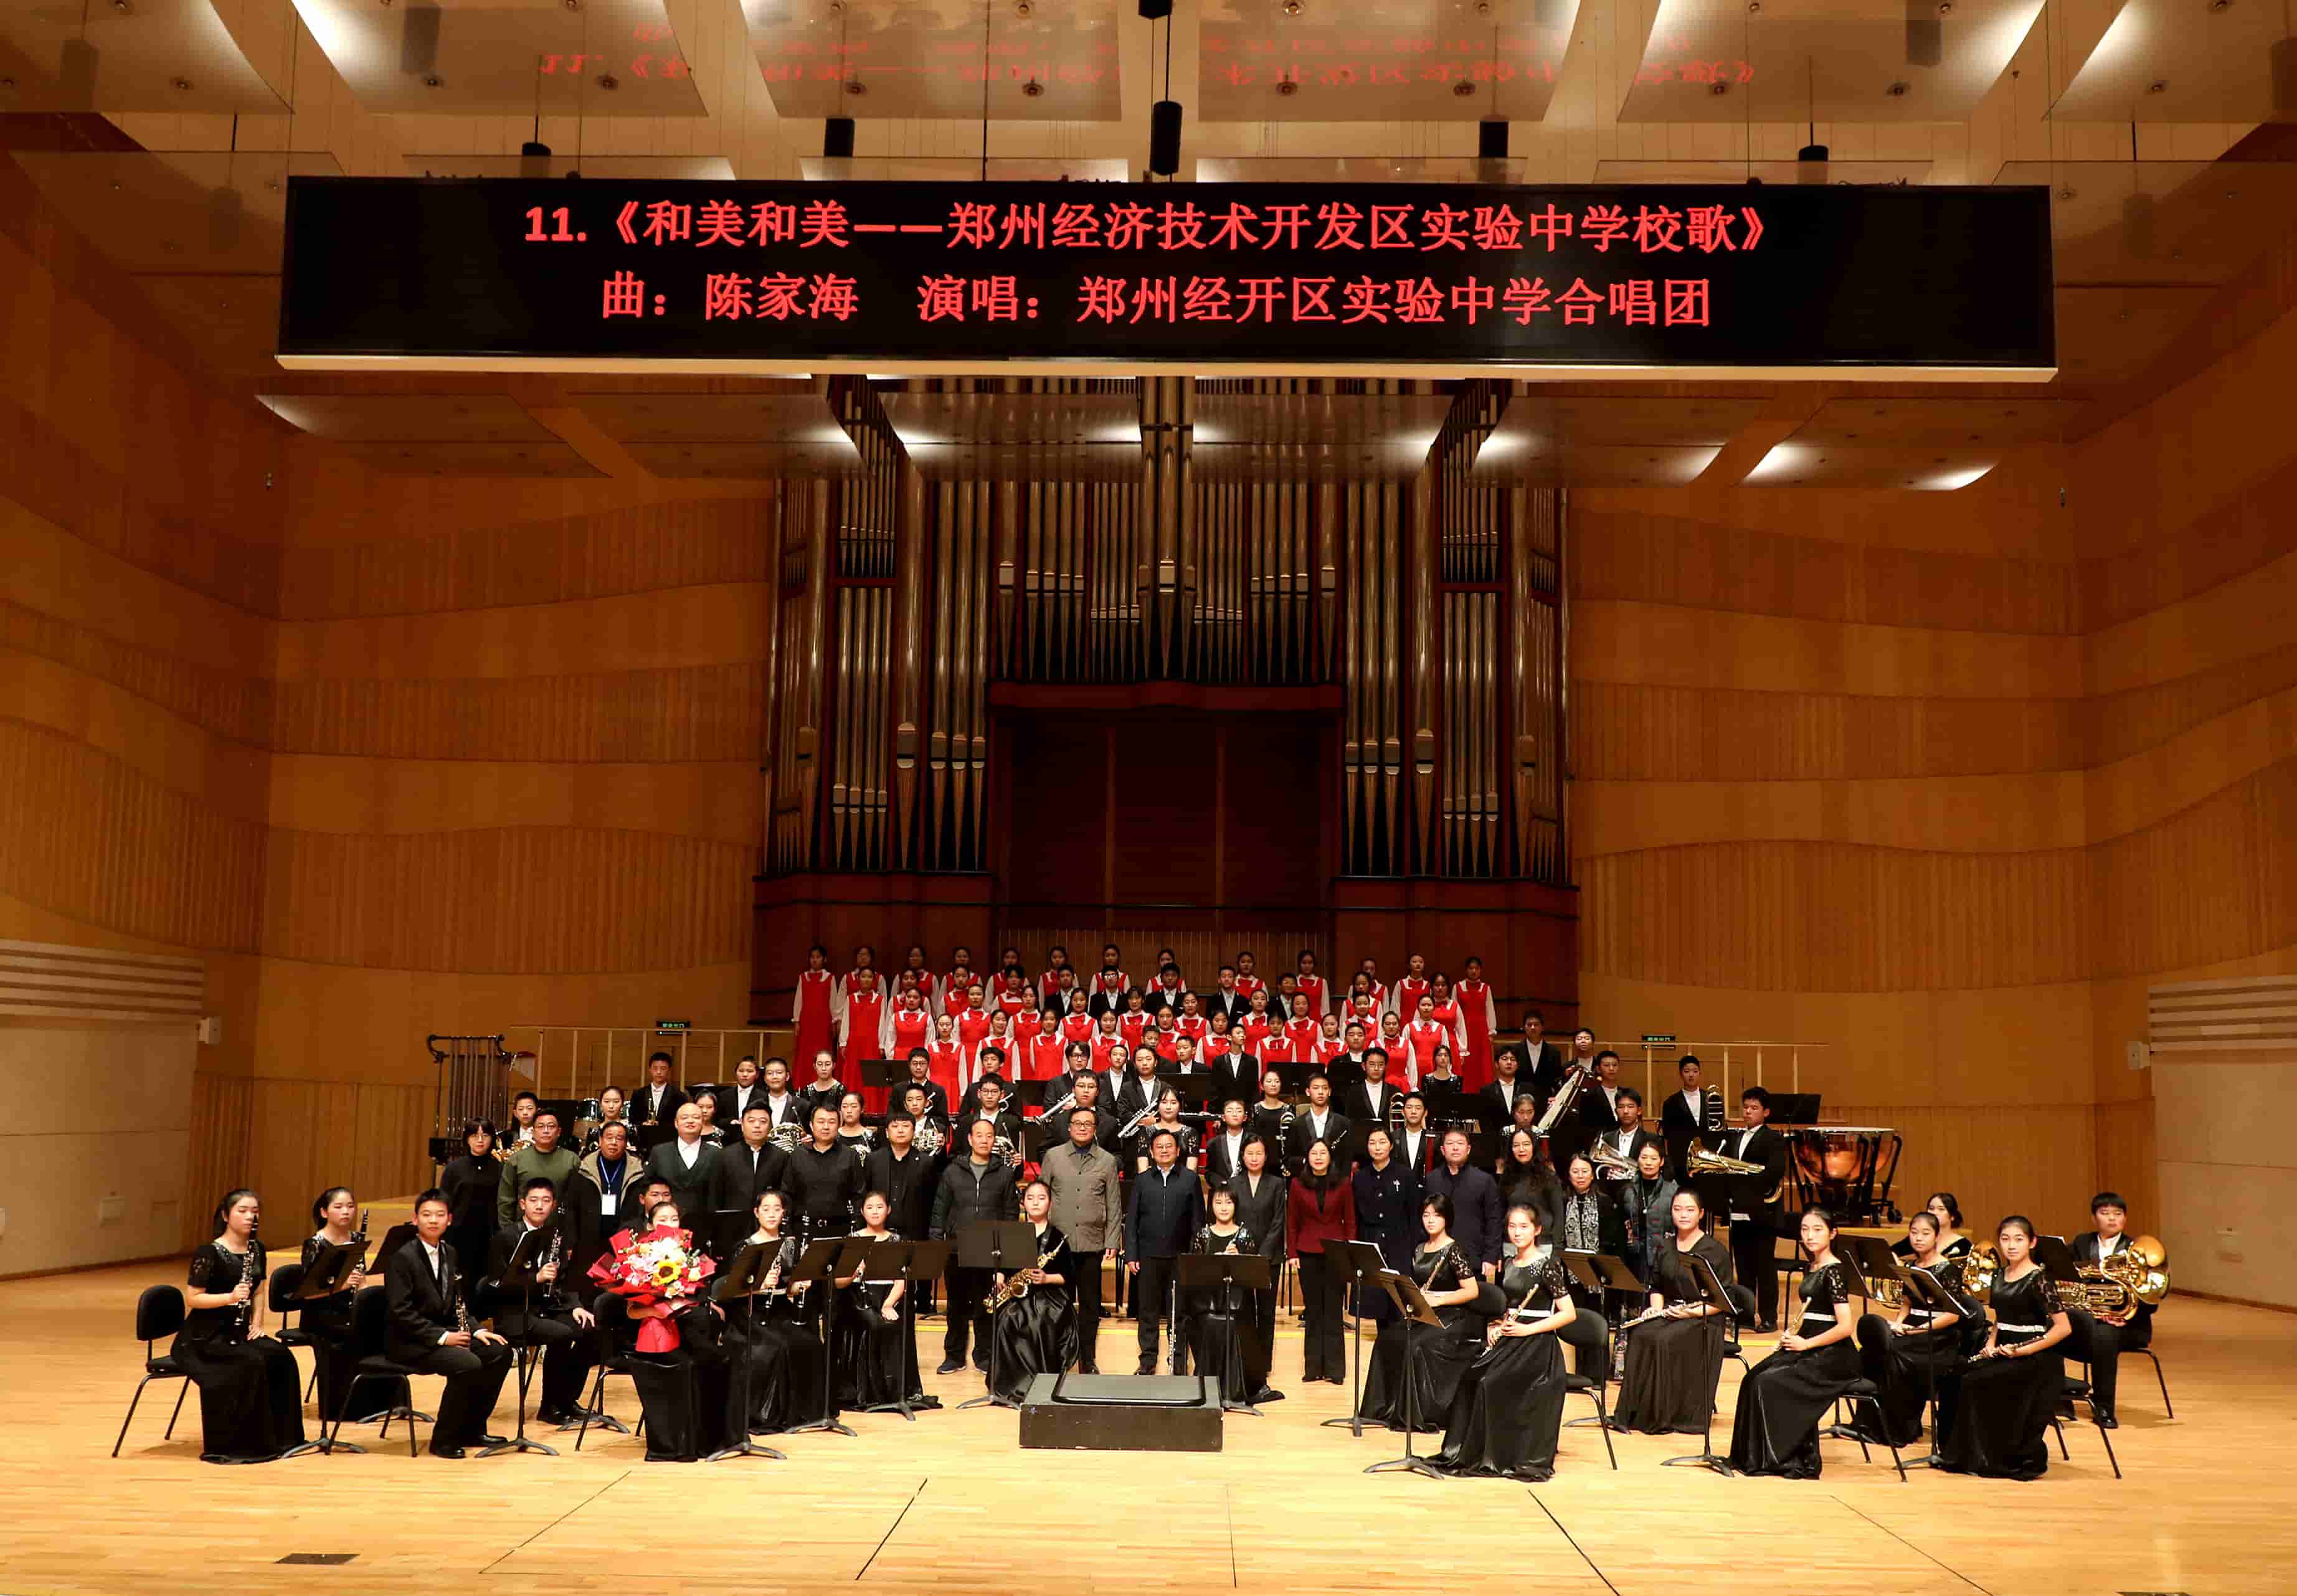 “和美之声”，精彩奏响！郑州经开区实验中学中外优秀交响管乐作品专场音乐会成功举办